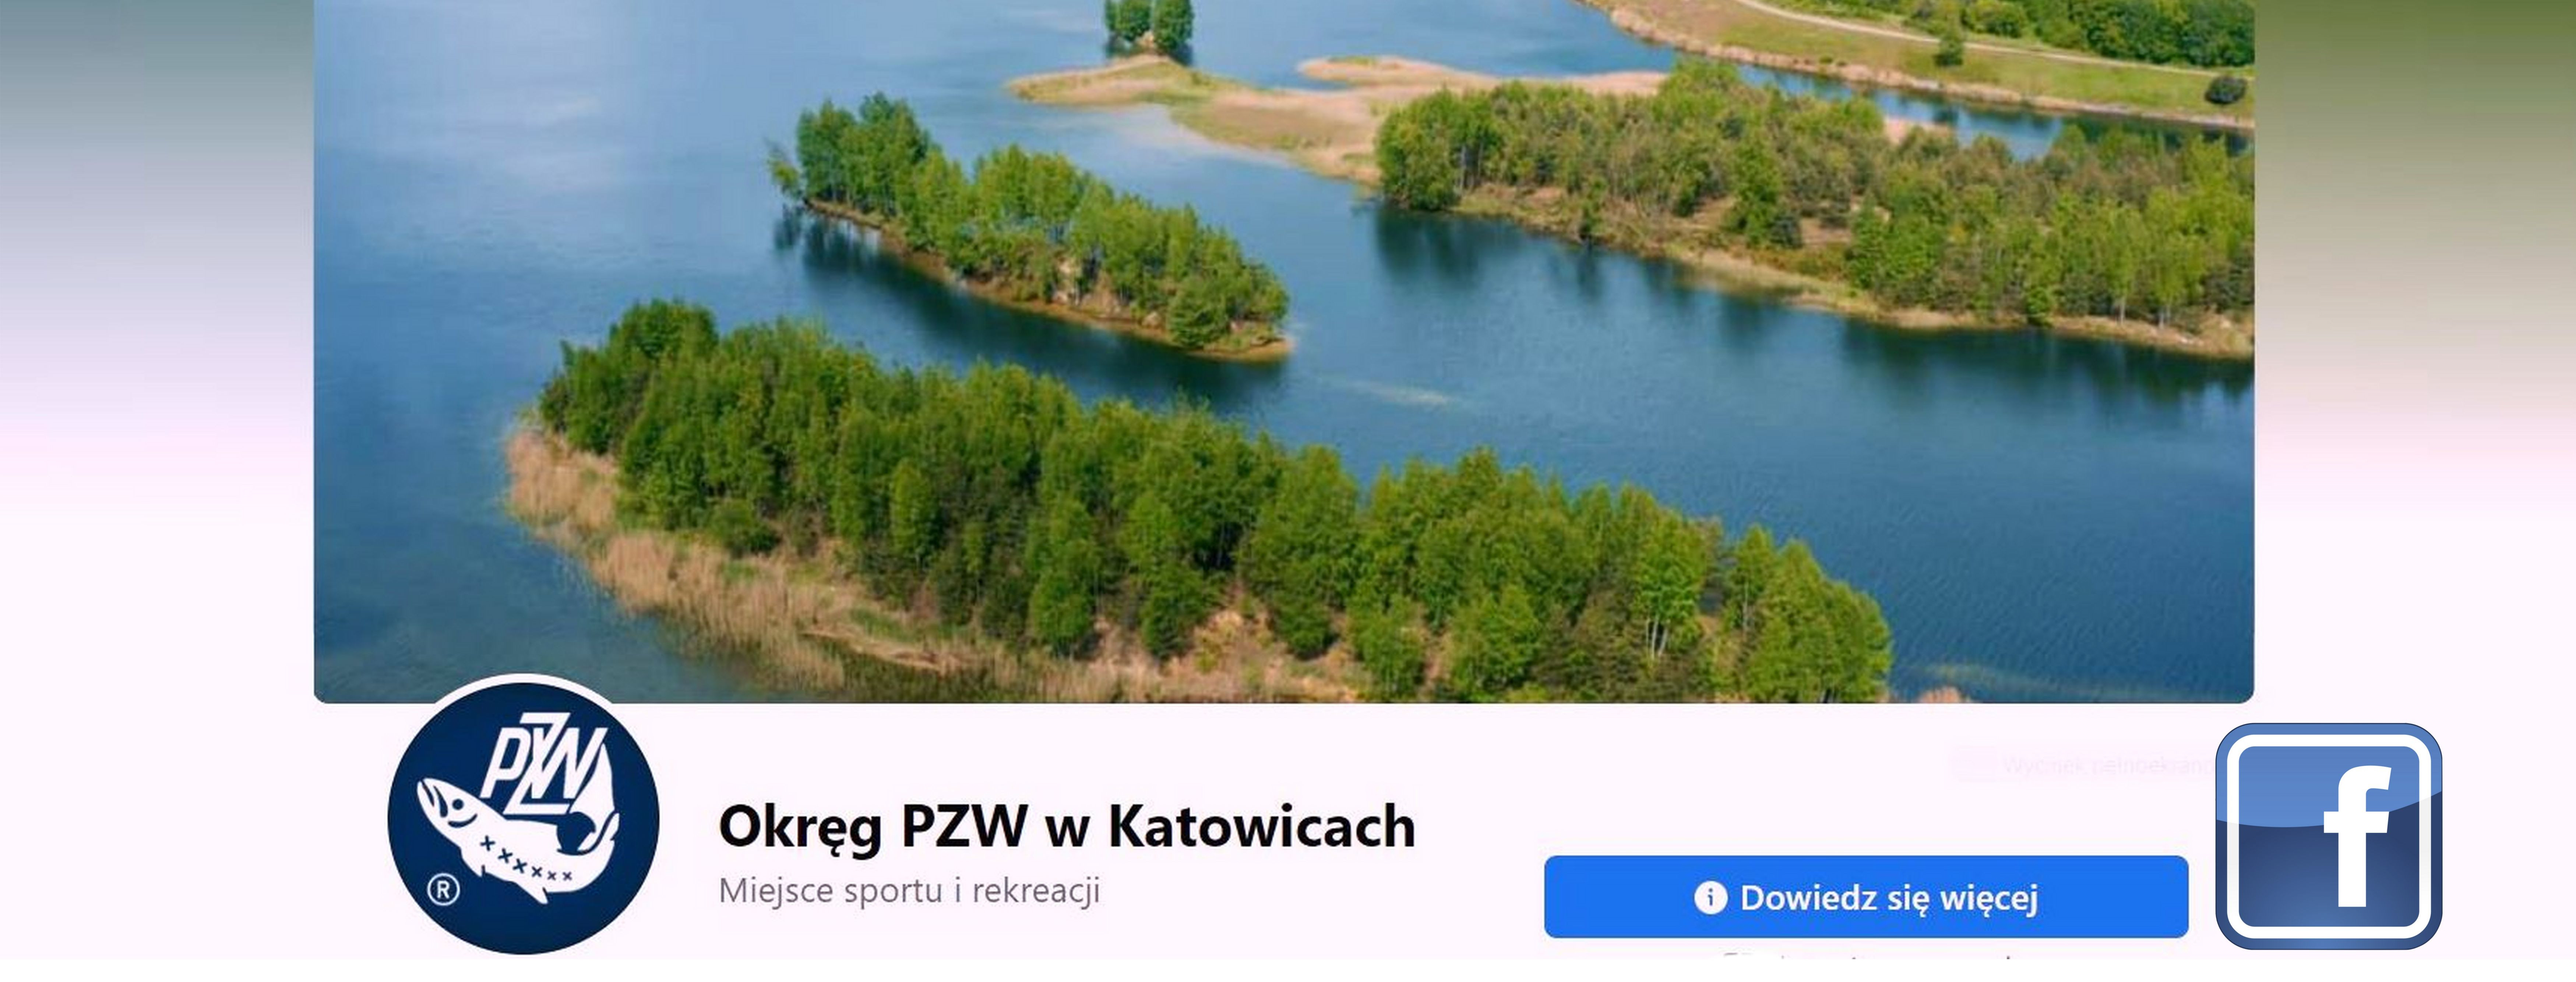 Okręg PZW w Katowicach portal Facebook